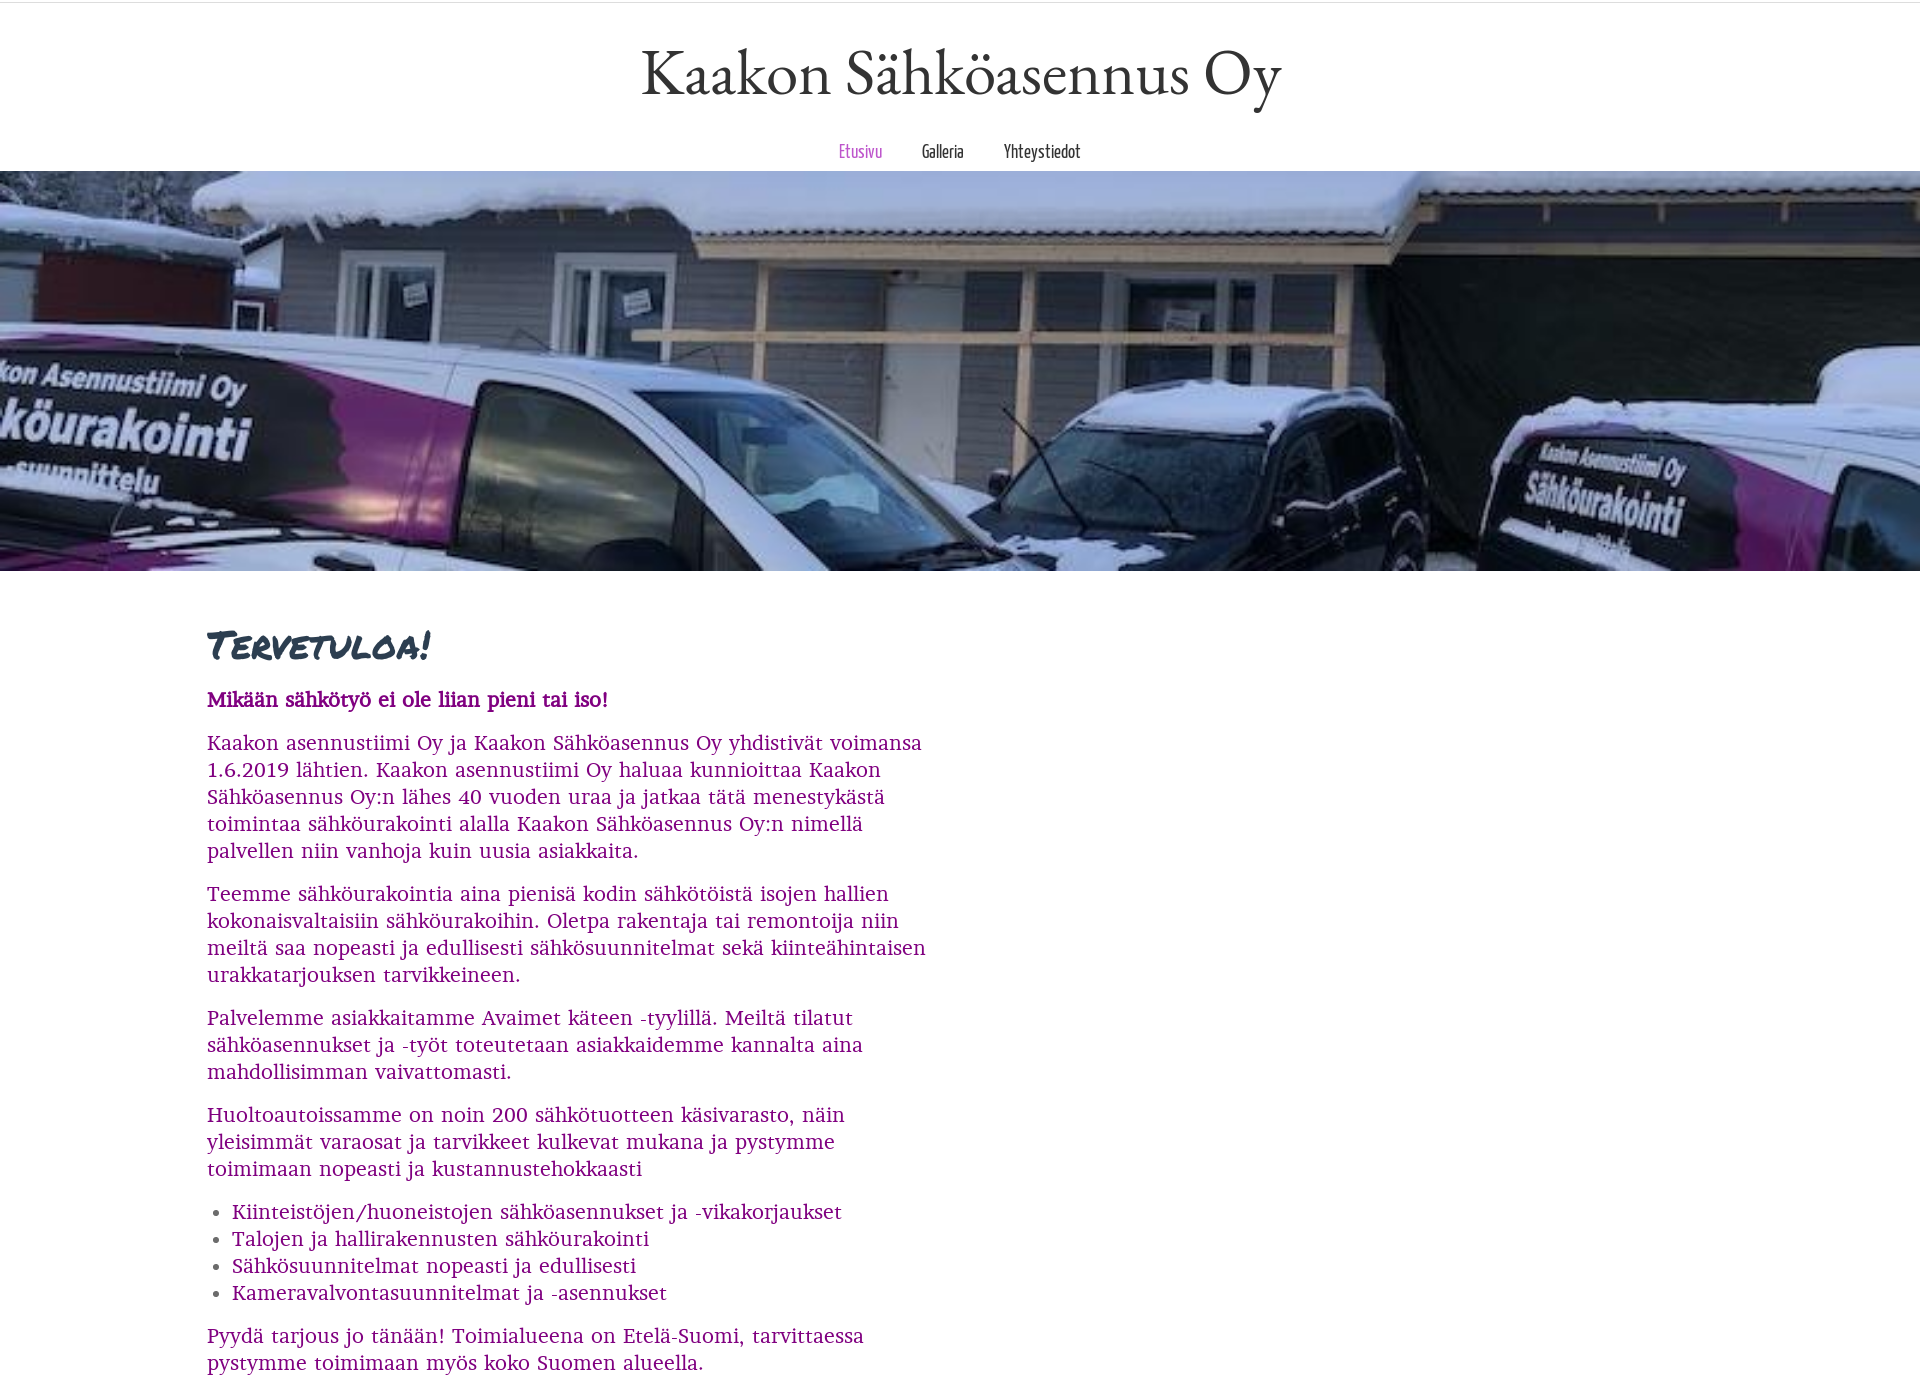 Skärmdump för kaakonasennustiimi.fi